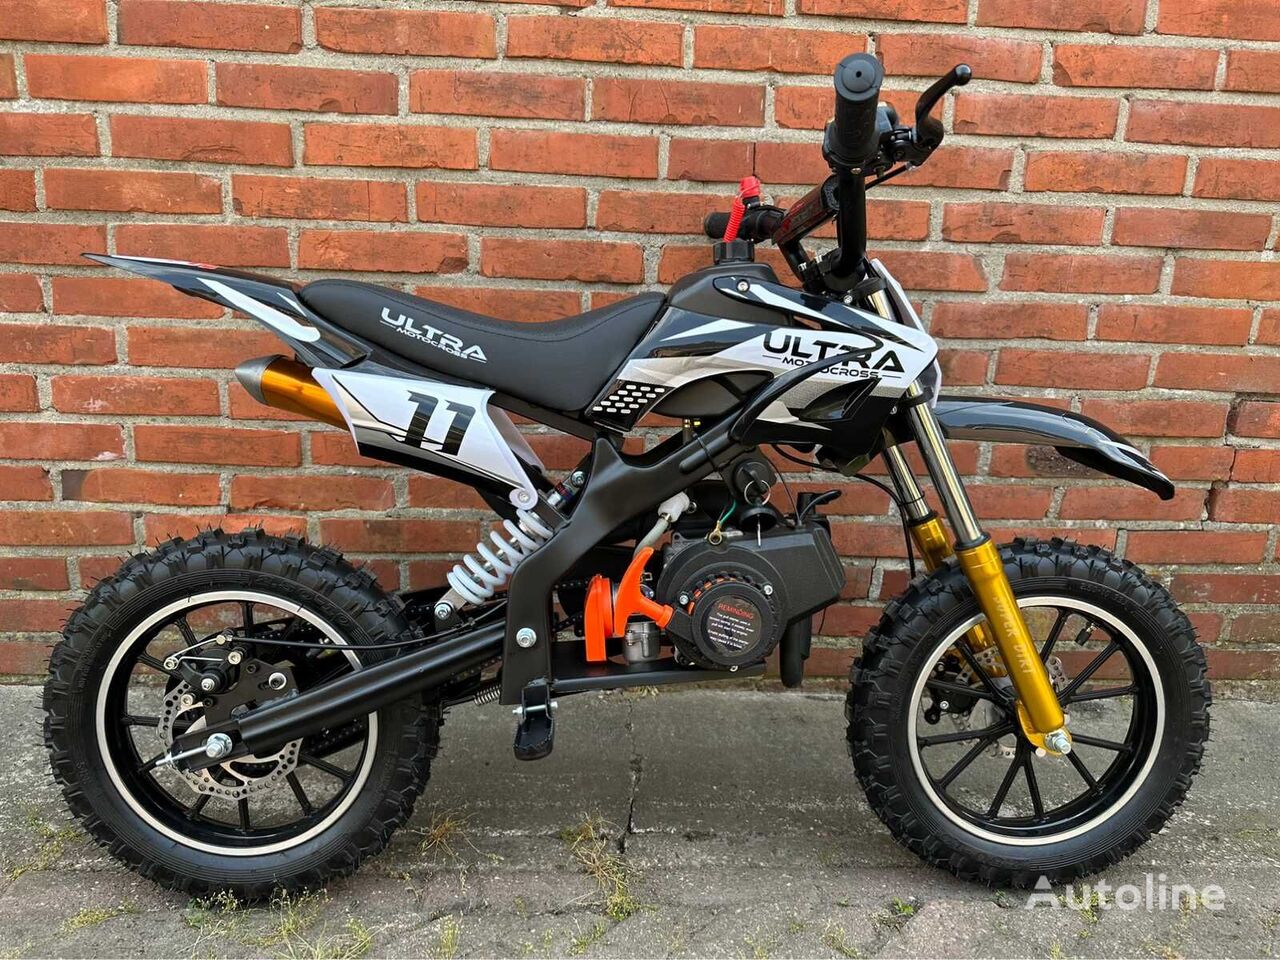 Ultra Dirt bike moto